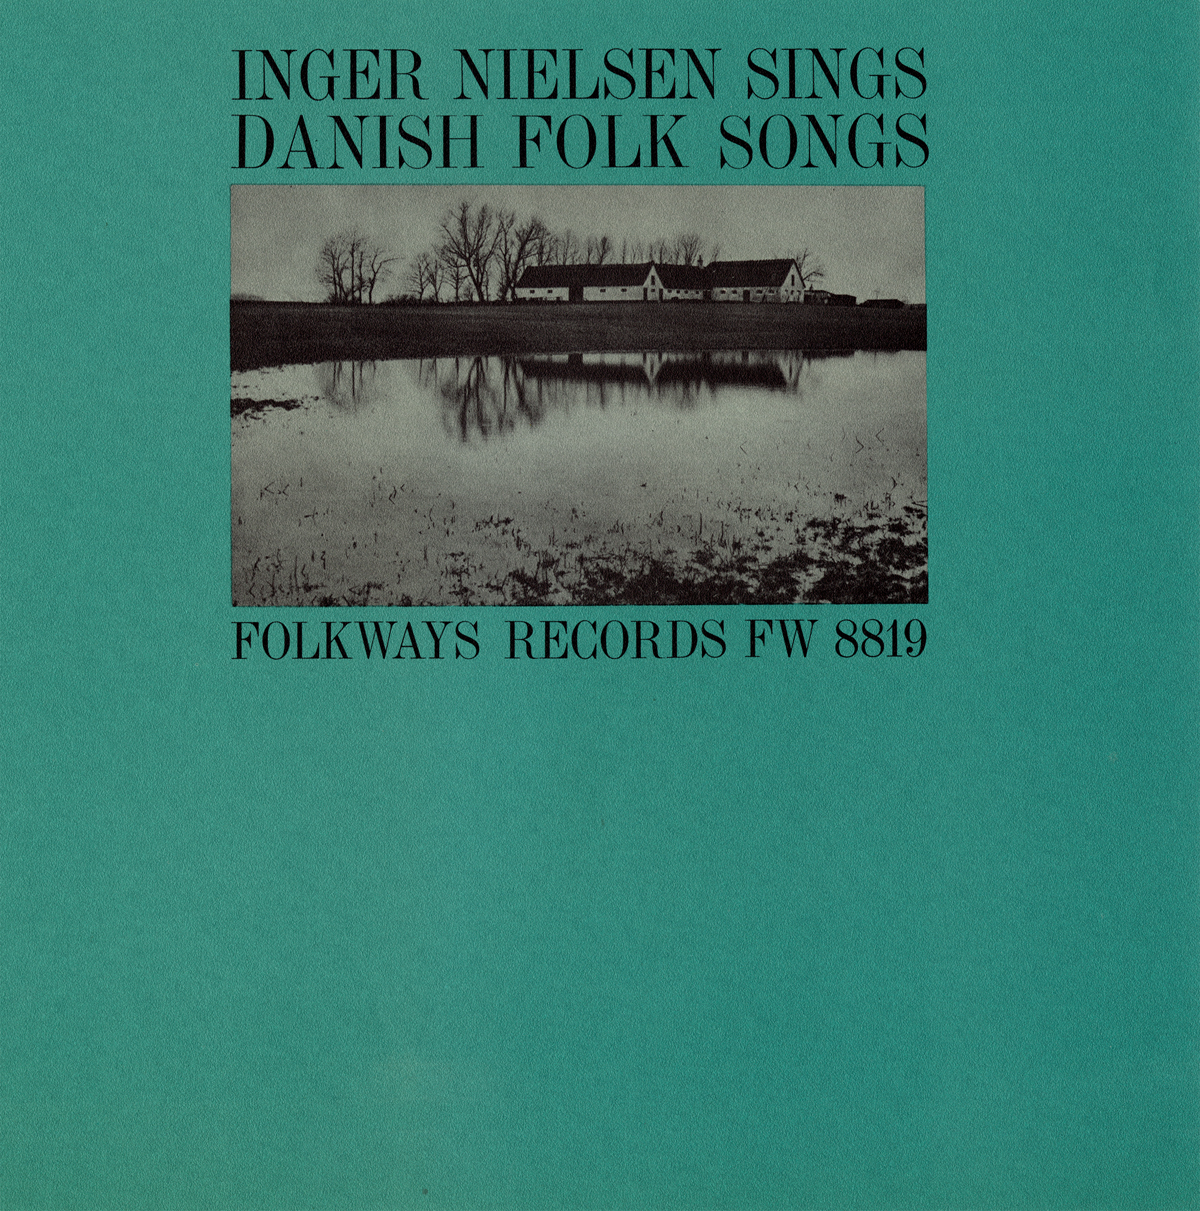 INGER NIELSEN SINGS DANISH FOLK SONGS